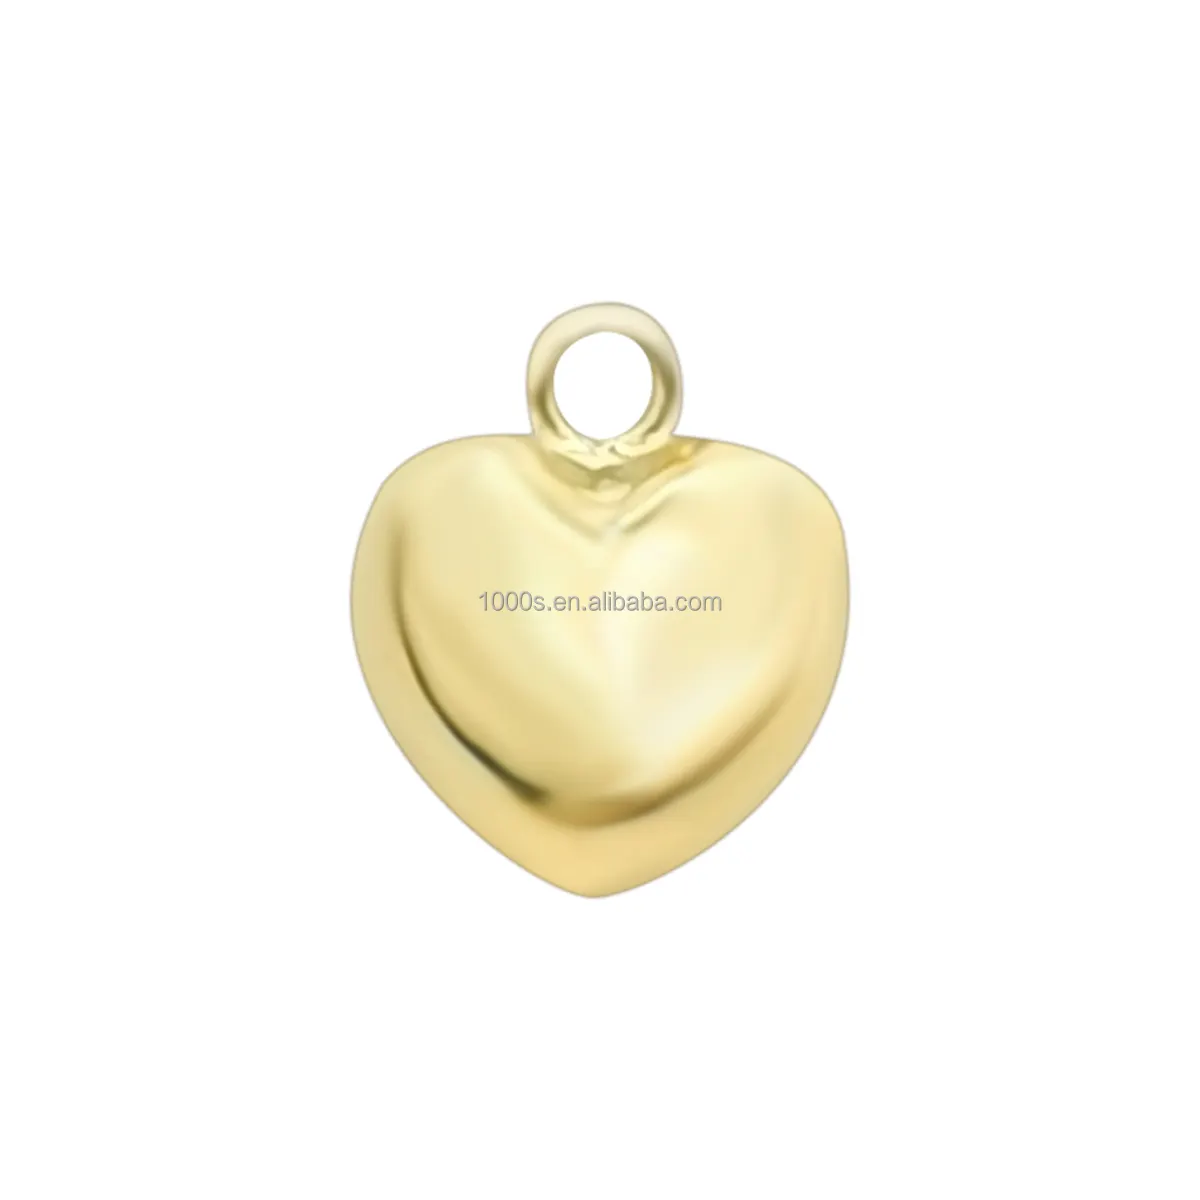 핫 잘 팔리는 액세서리 도매 pulseira Real 금 Necklace Bracelet Heart Shape Soild 금 charm 펜 던 트 액세서리